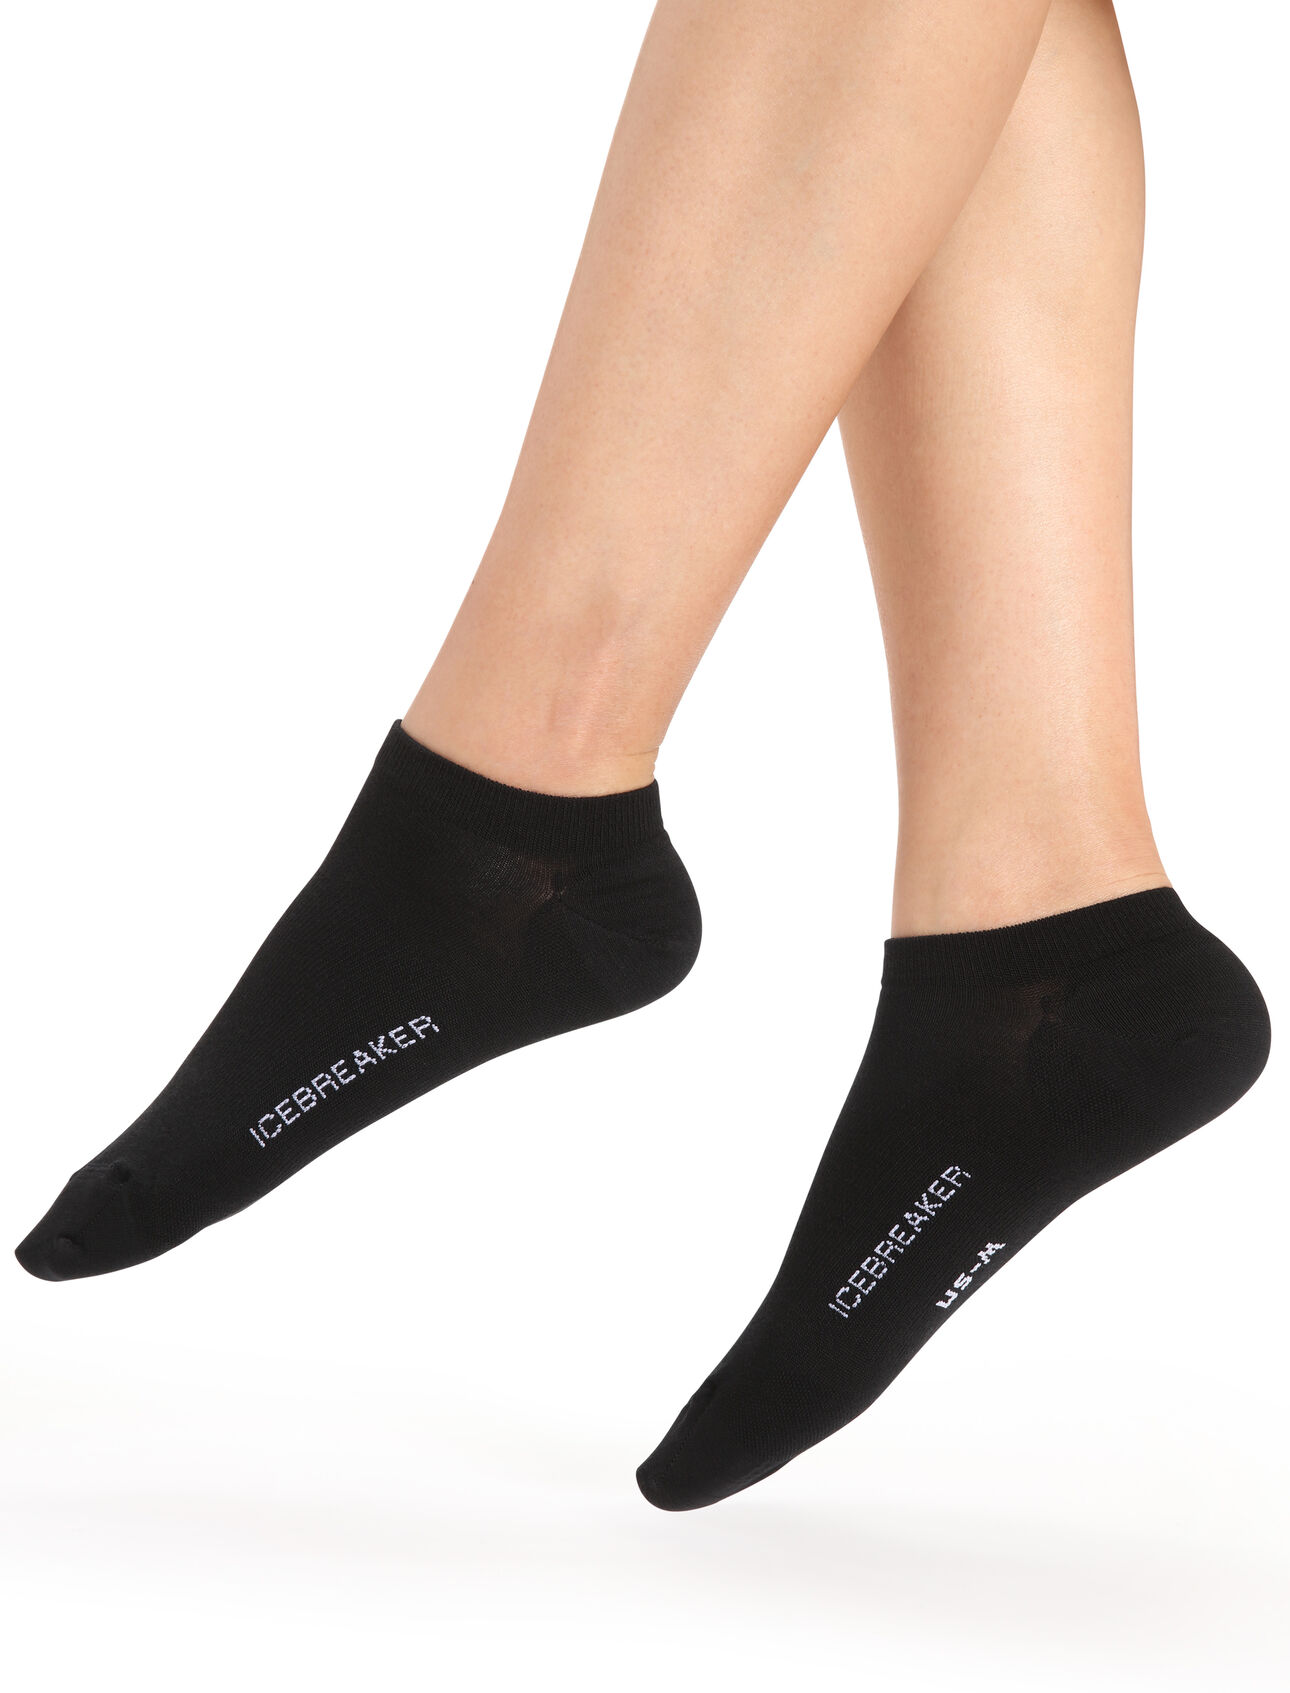 Merino Lifestyle Feinstricksocken No Show Damen Leichte, lässige Socken für jeden Tag, die Lifestyle Feinstricksocken No-Show verbinden den Komfort von hochwertiger Merinowolle mit einer robusten Konstruktion.